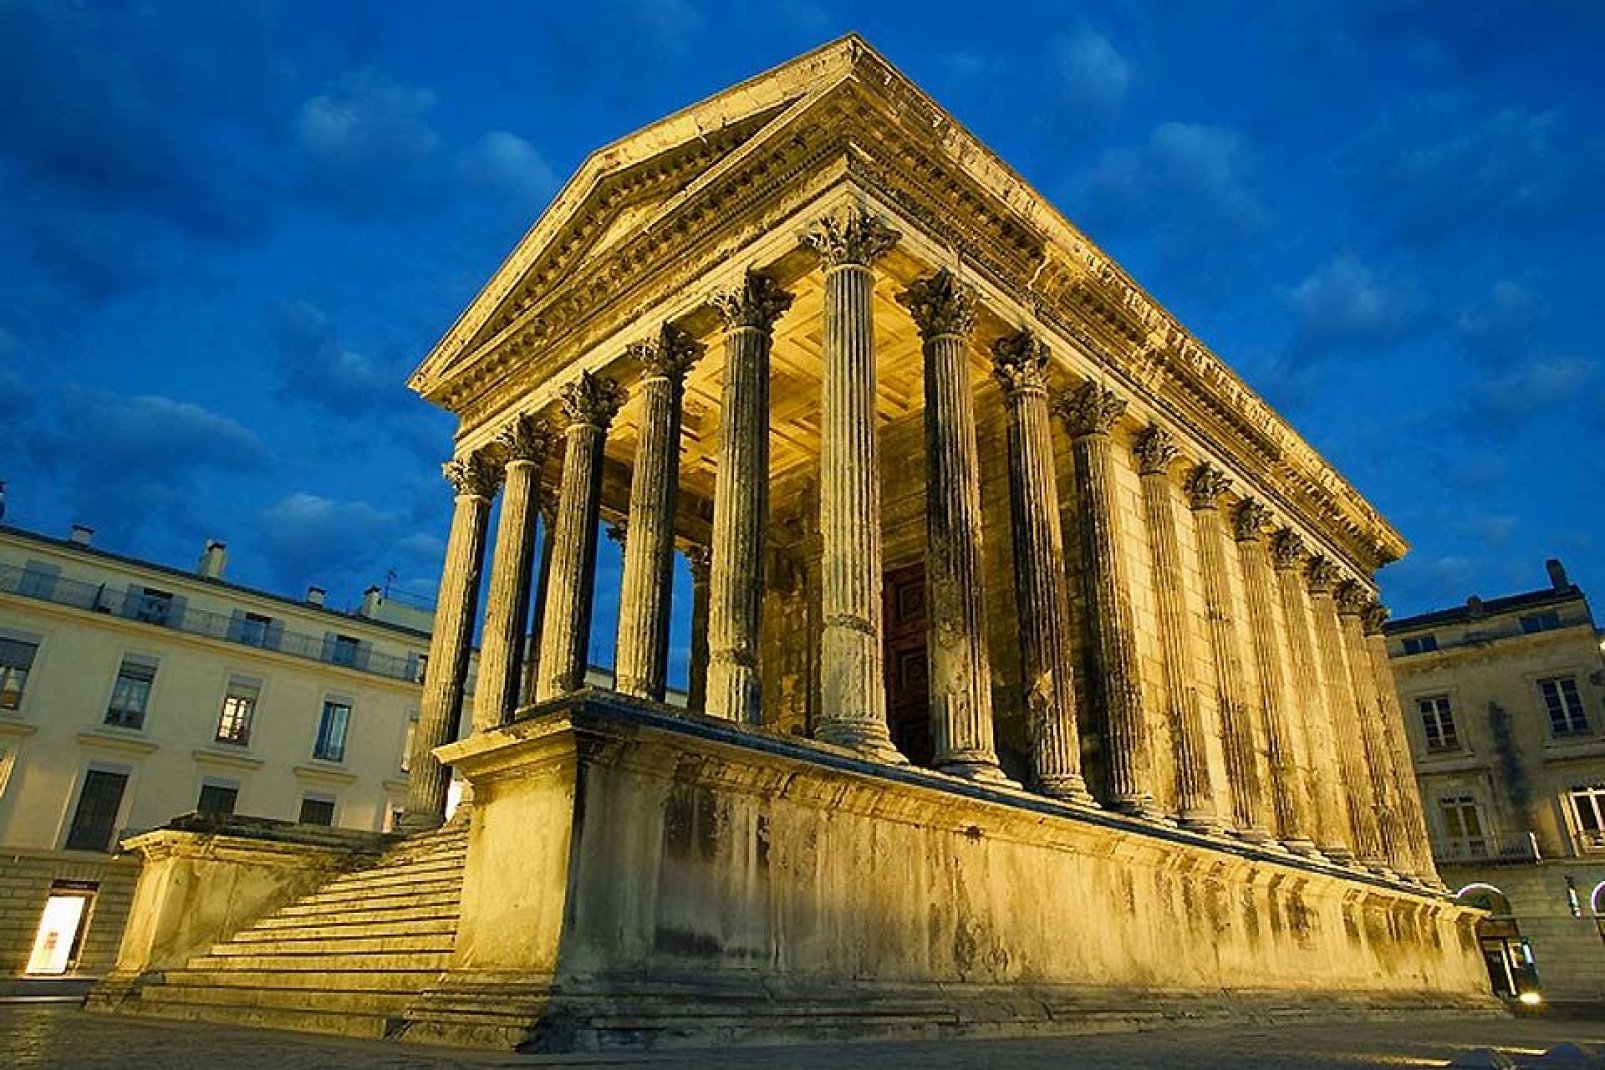 La Maison Carrée es el único templo romano del mundo que se conserva entero. En él se puede ver el documental en 3D «Héroes de Nimes» en pantalla gigante y que dura 20 minutos.